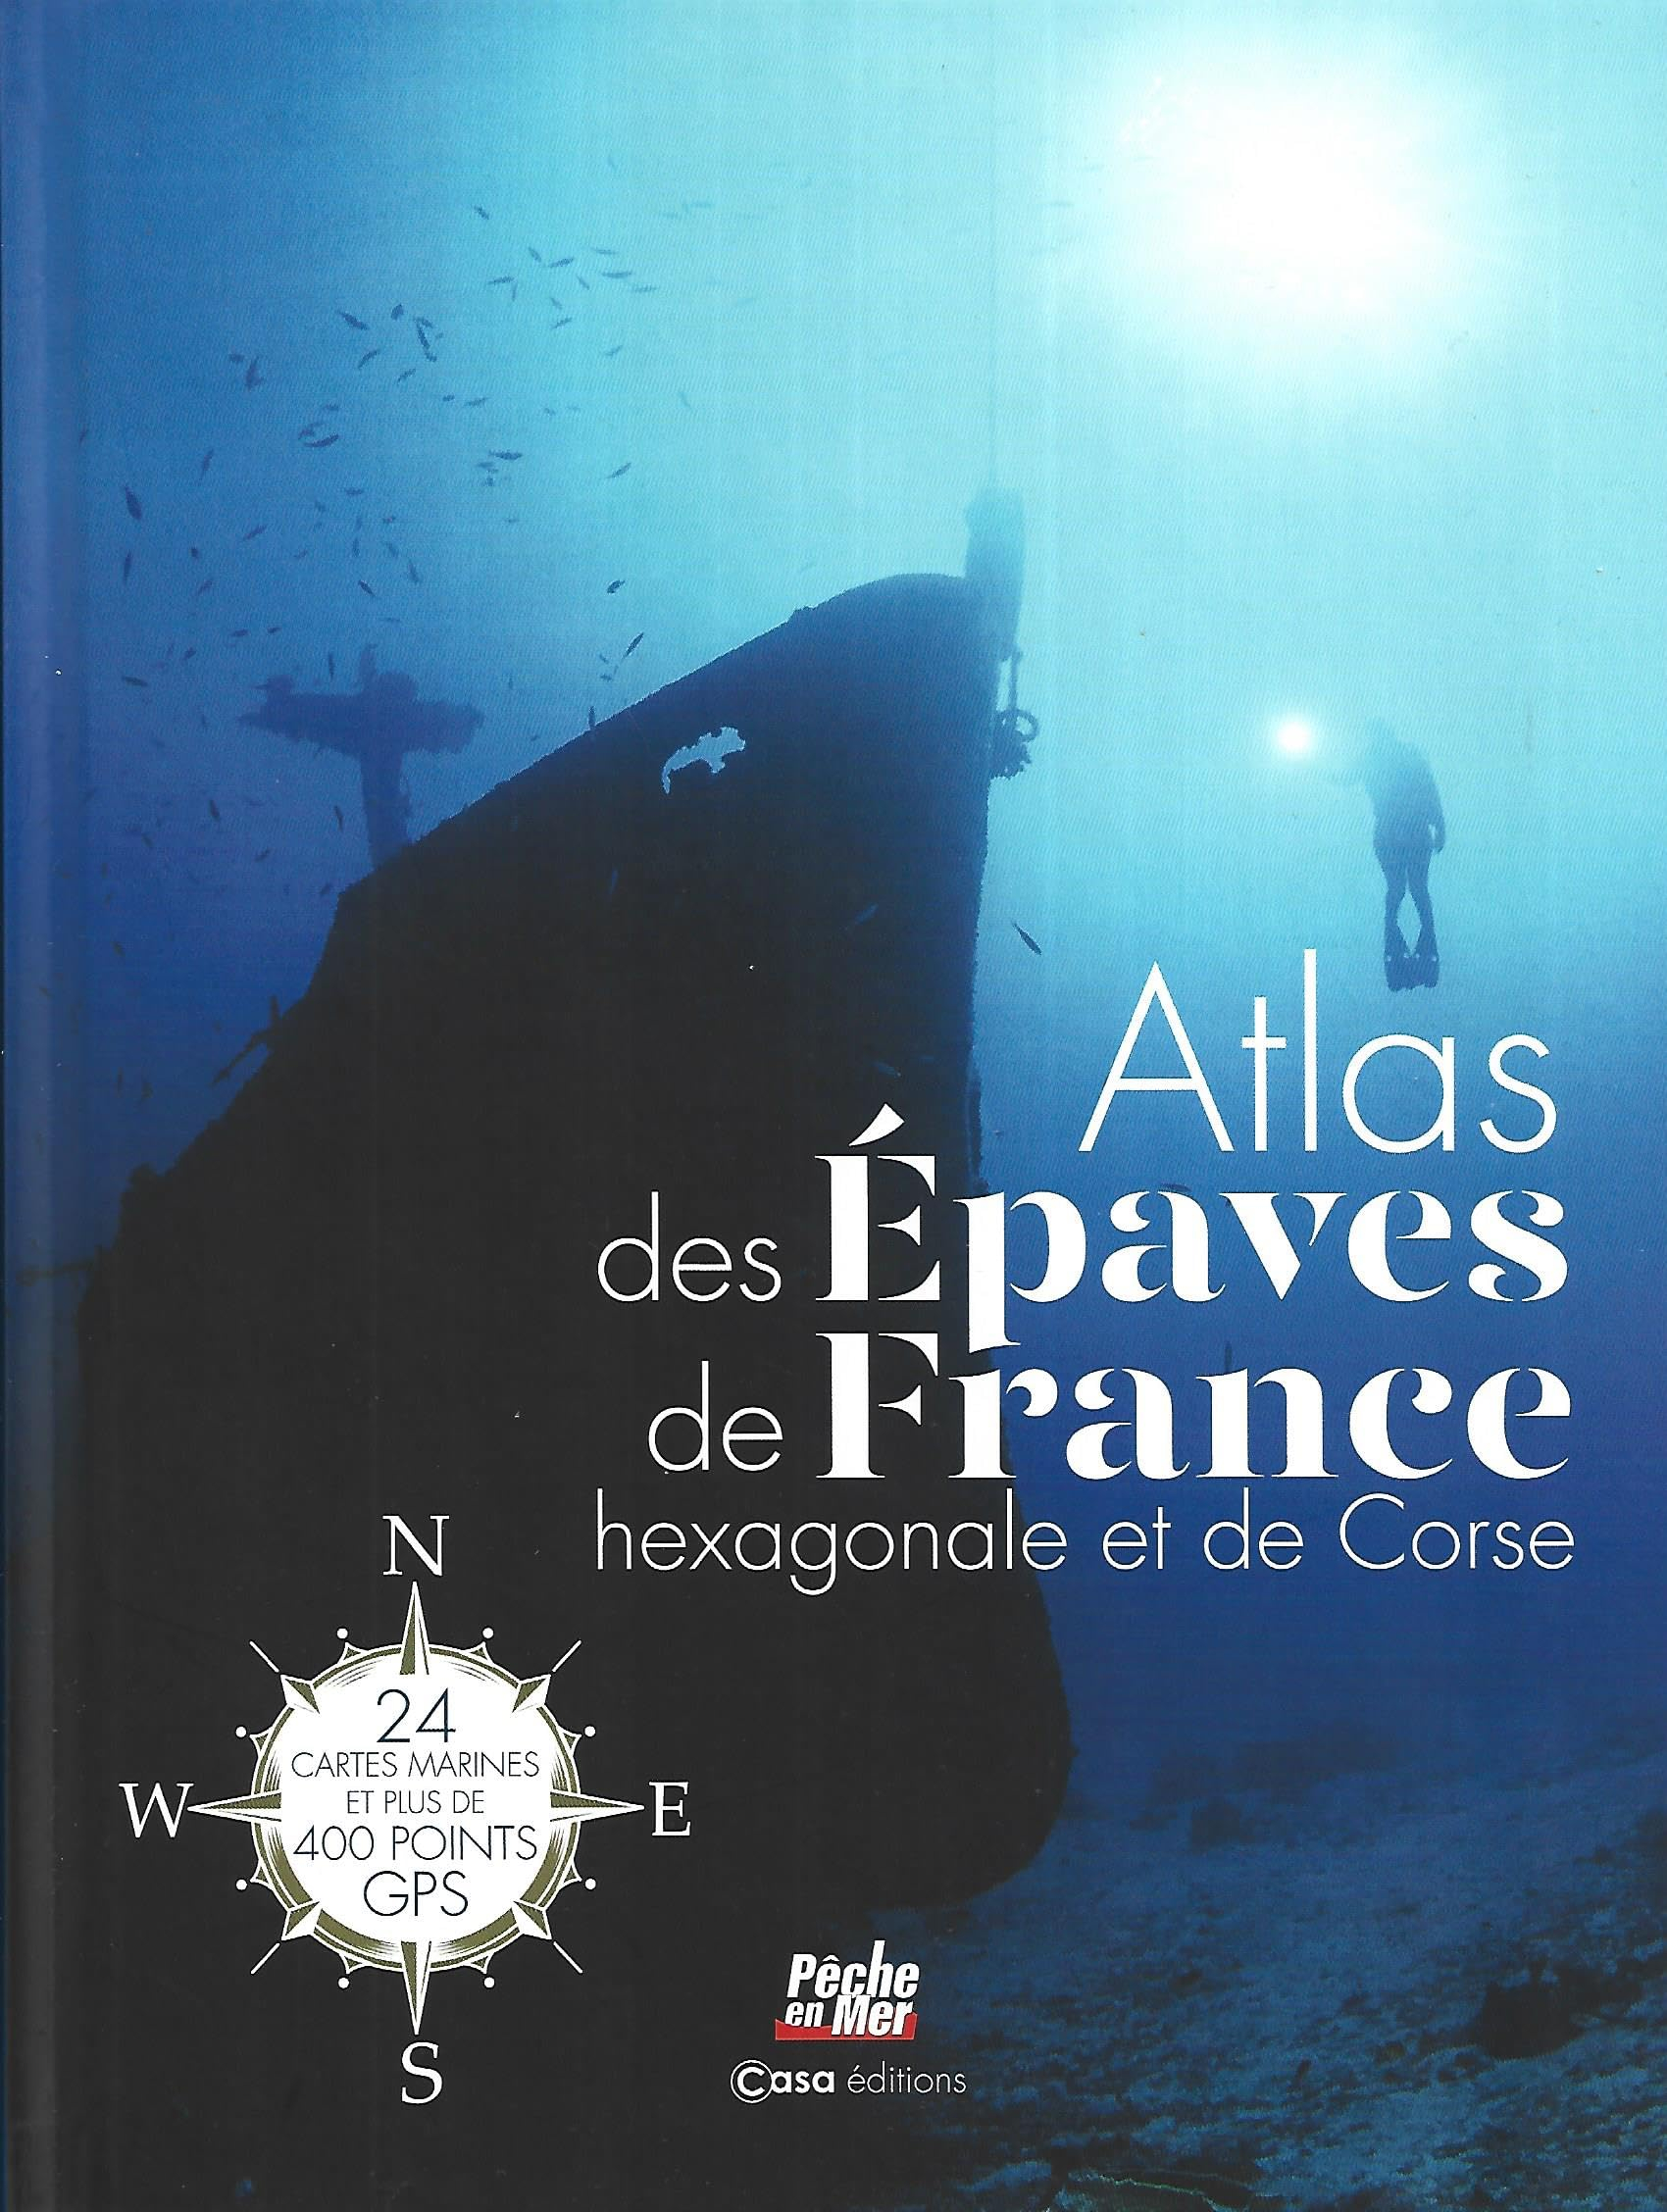 Atlas des épaves de France hexagonale et de Corse : 24 cartes marines et plus de 400 points GPS